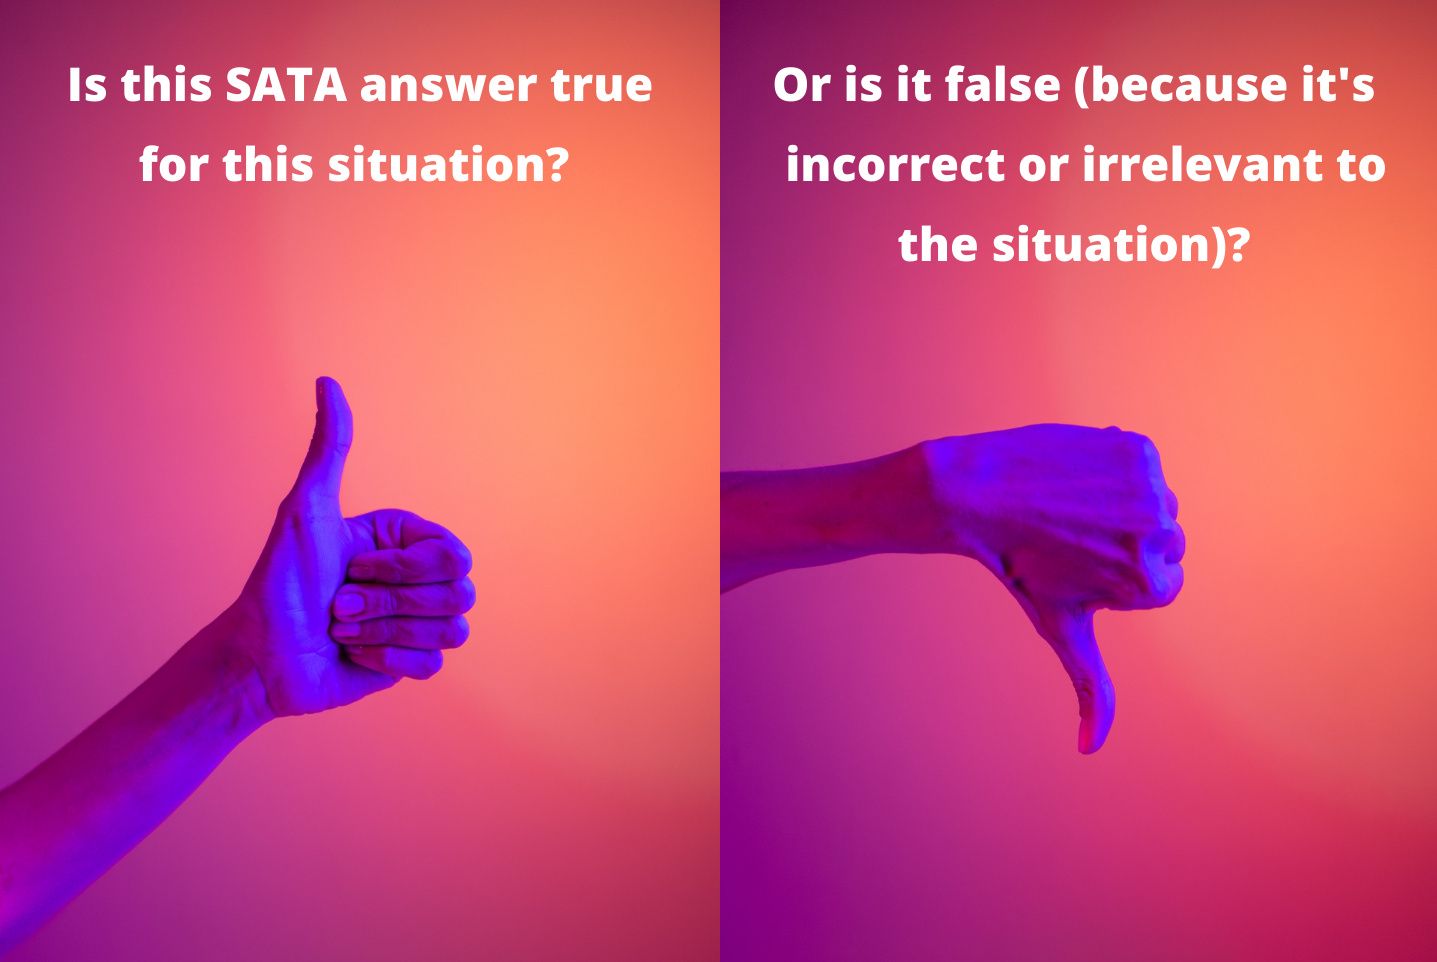 True or false filter for SATA NCLEX questions